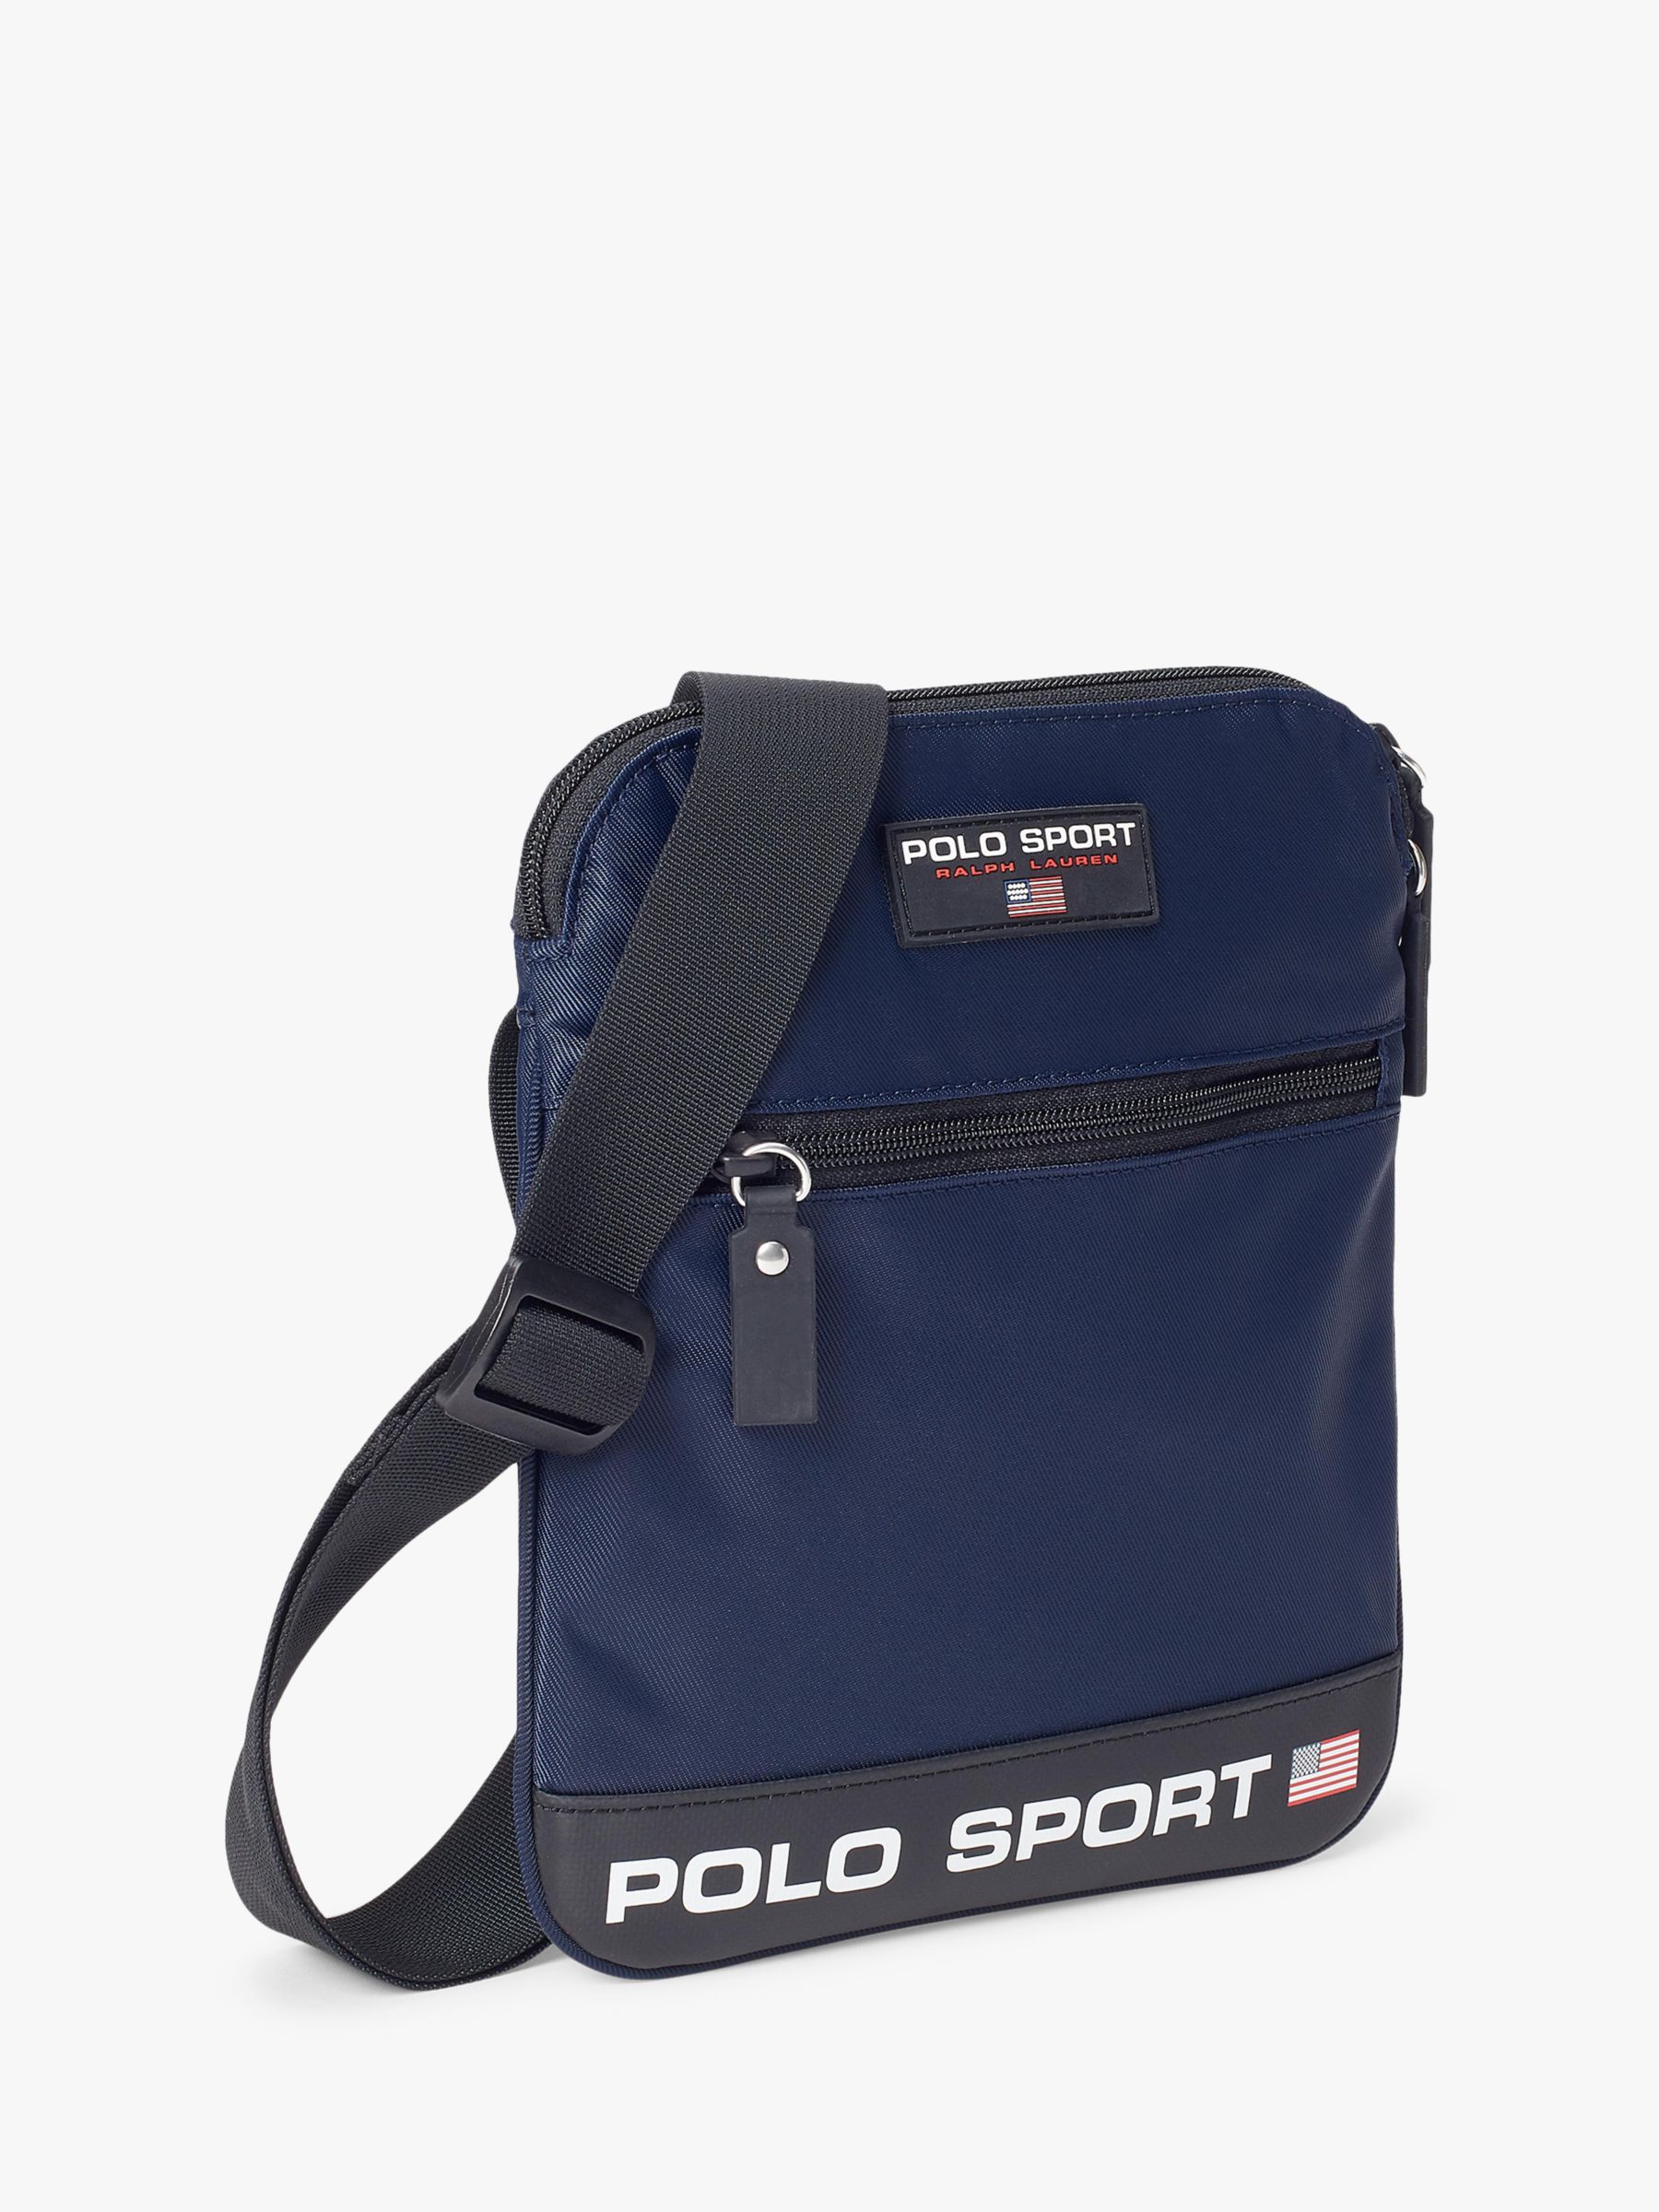 Polo Ralph Lauren Polo Sport Crossbody Bag, Navy